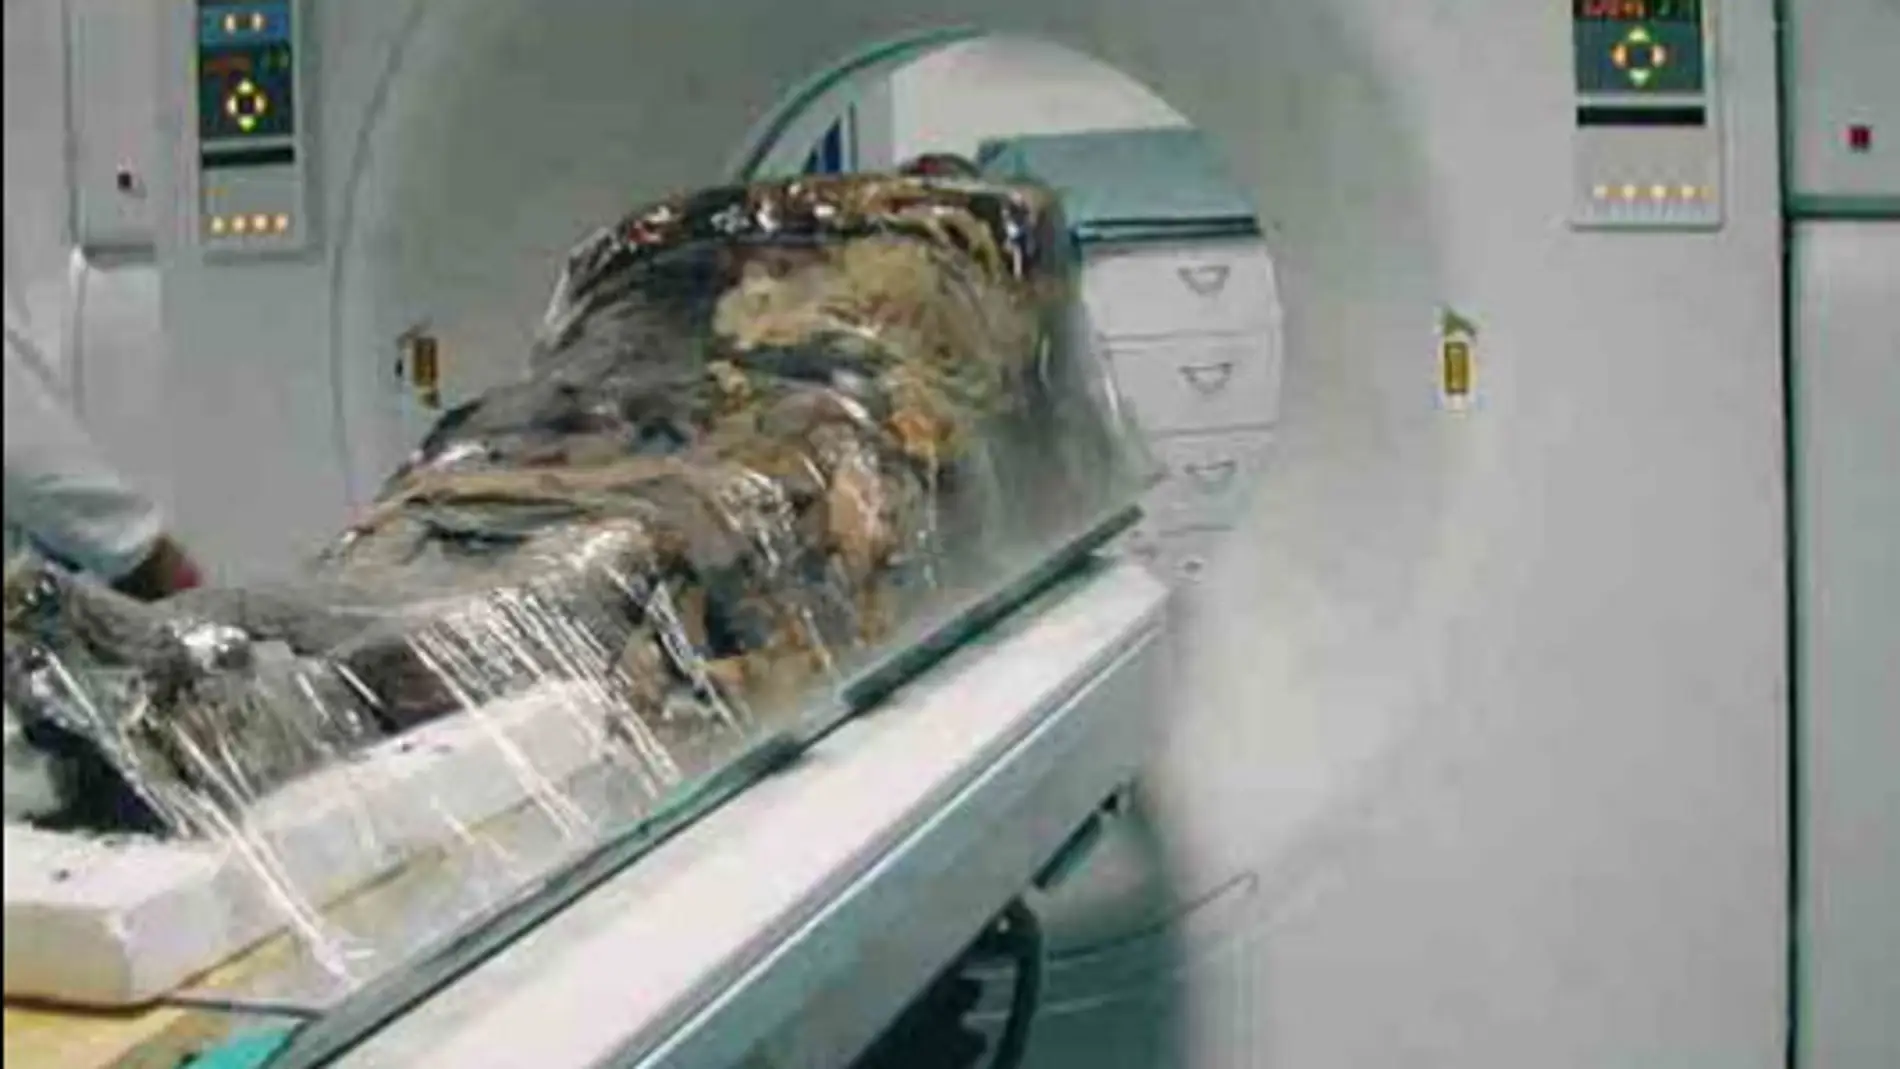 La momia de Cangrande analizada en Pisa